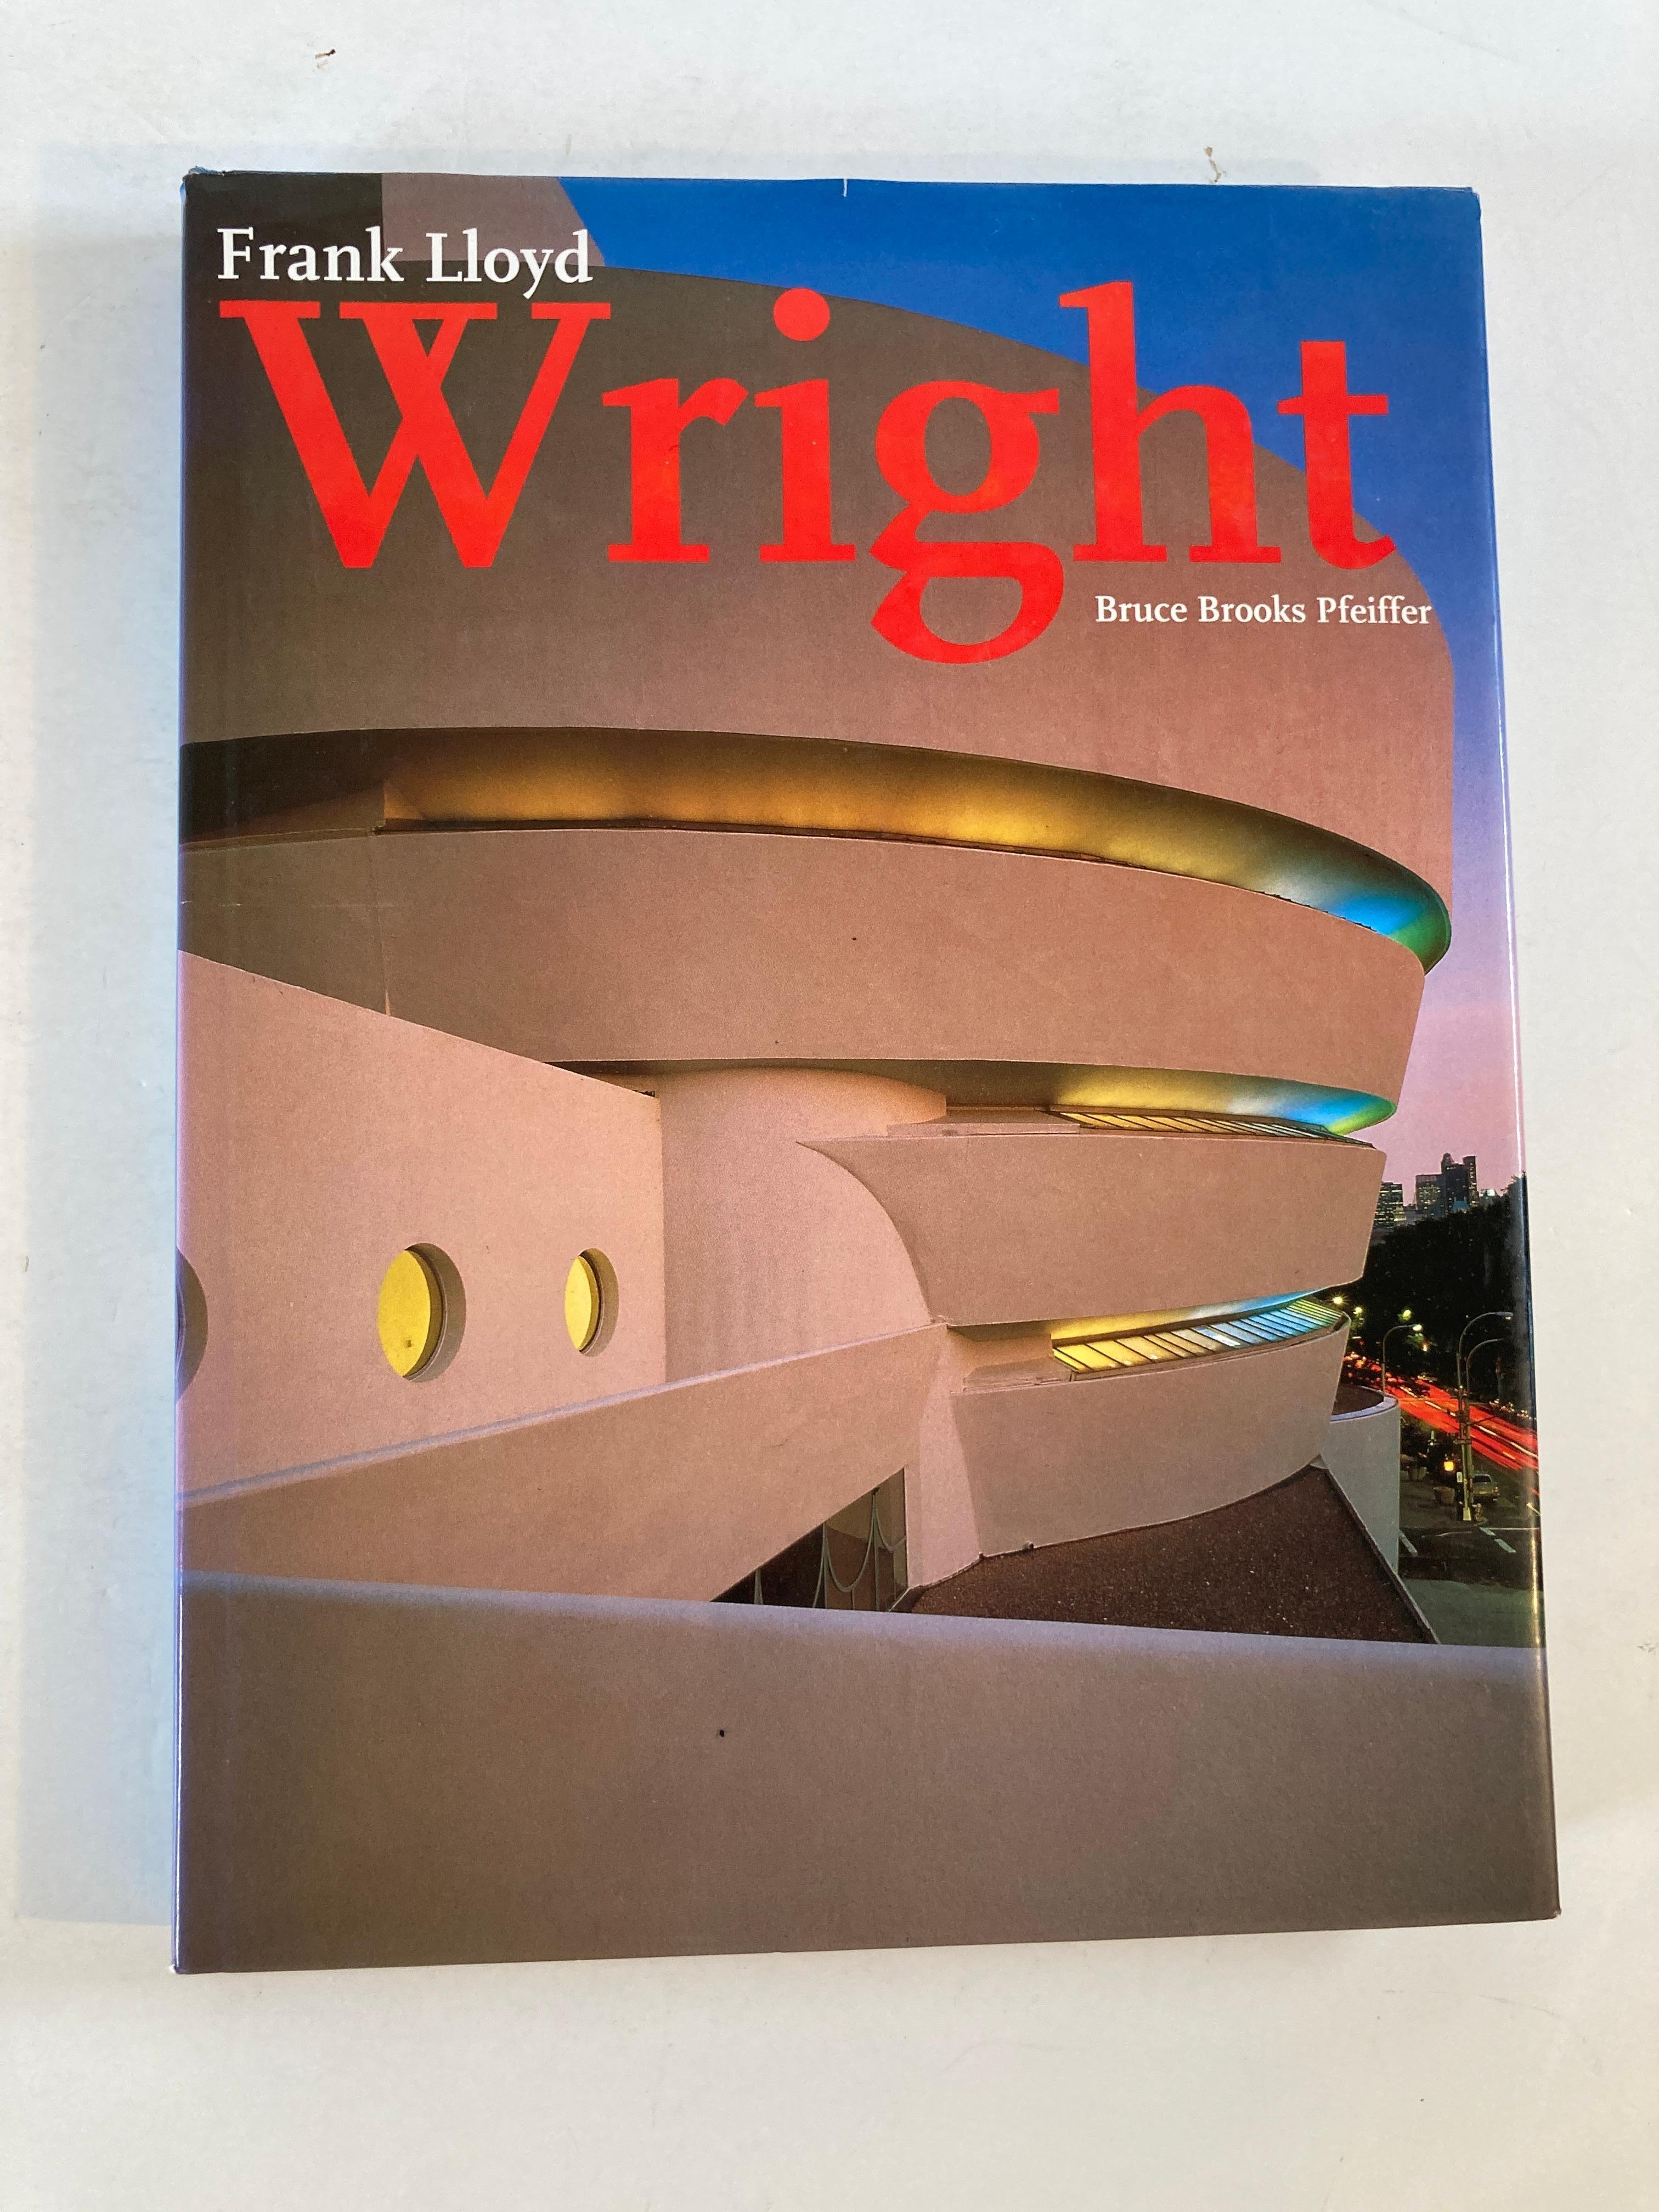 Frank Lloyds Wright par Bruce-brooks-pfeiffer. Livre relié.
Publié par Barnes Noble Books (1994).
Un bâtiment construit par Frank Lloyds Wright (1867-1959) est à la fois unique et évocateur de toute une époque. Remarquables pour leur compréhension